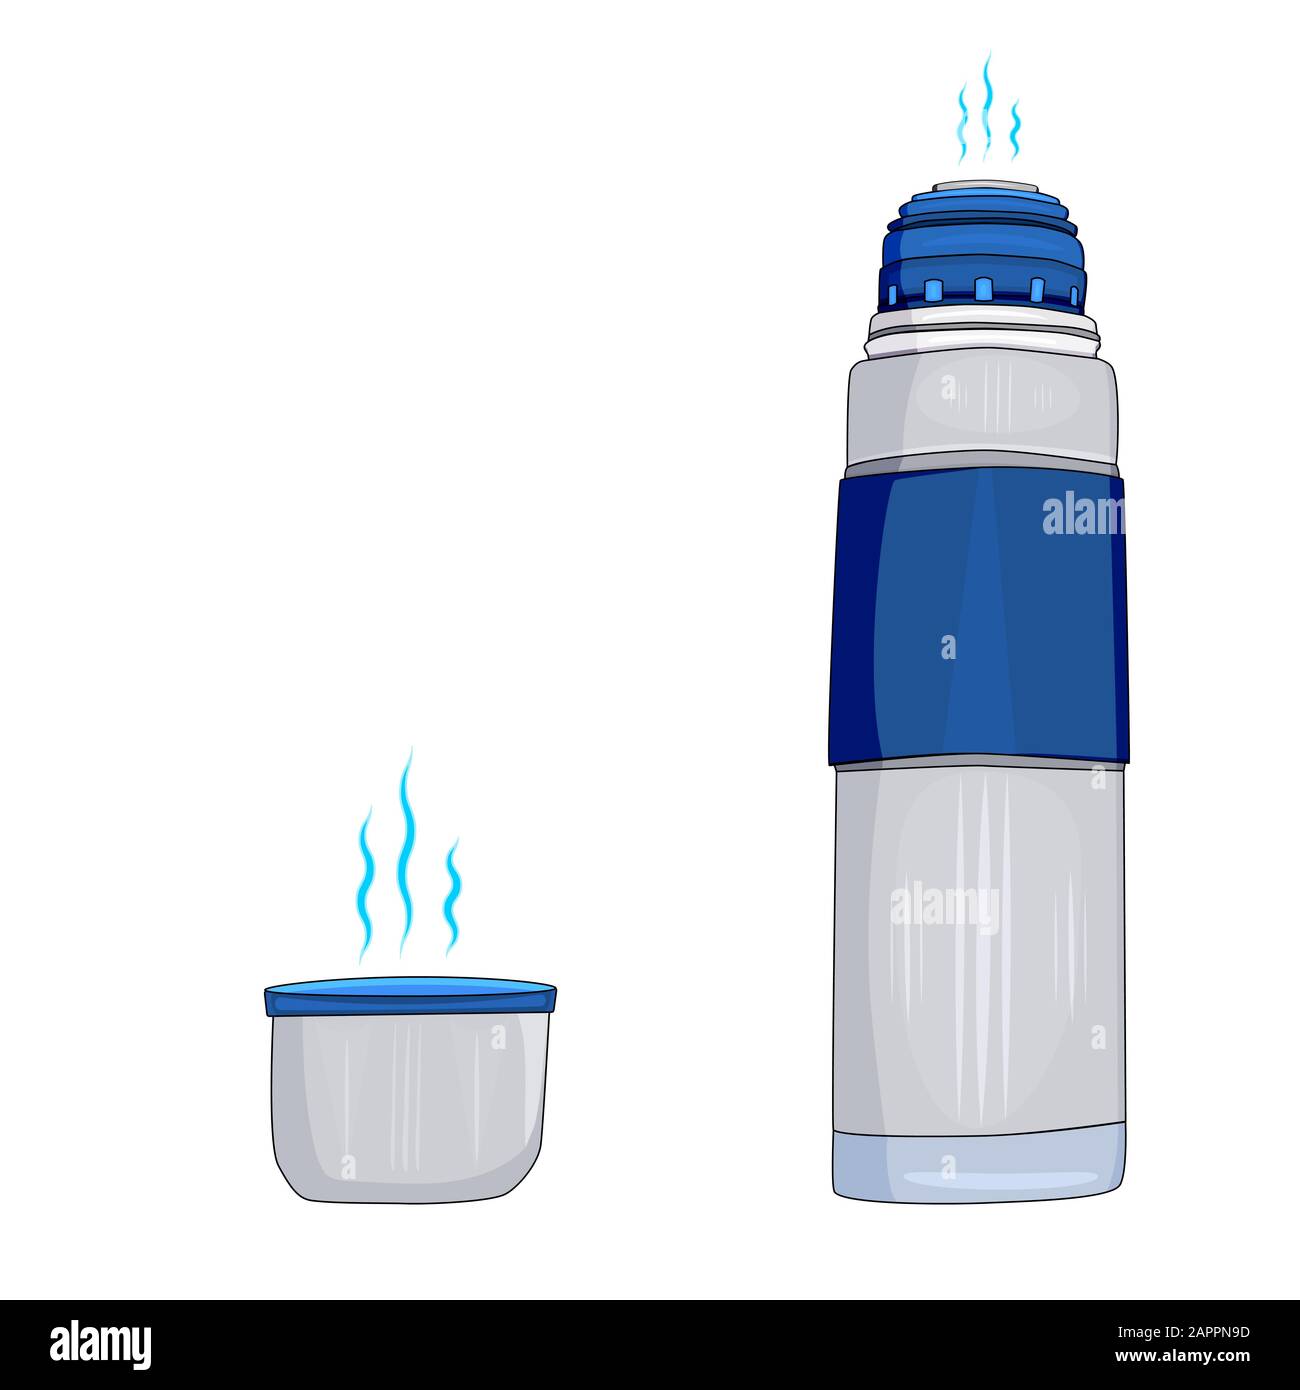 Matraccio di thermos blu con una tazza isolata su fondo bianco. Grandi thermos per escursioni e viaggi. Prodotto portatile ecologico. Illustrazione del vettore. Illustrazione Vettoriale